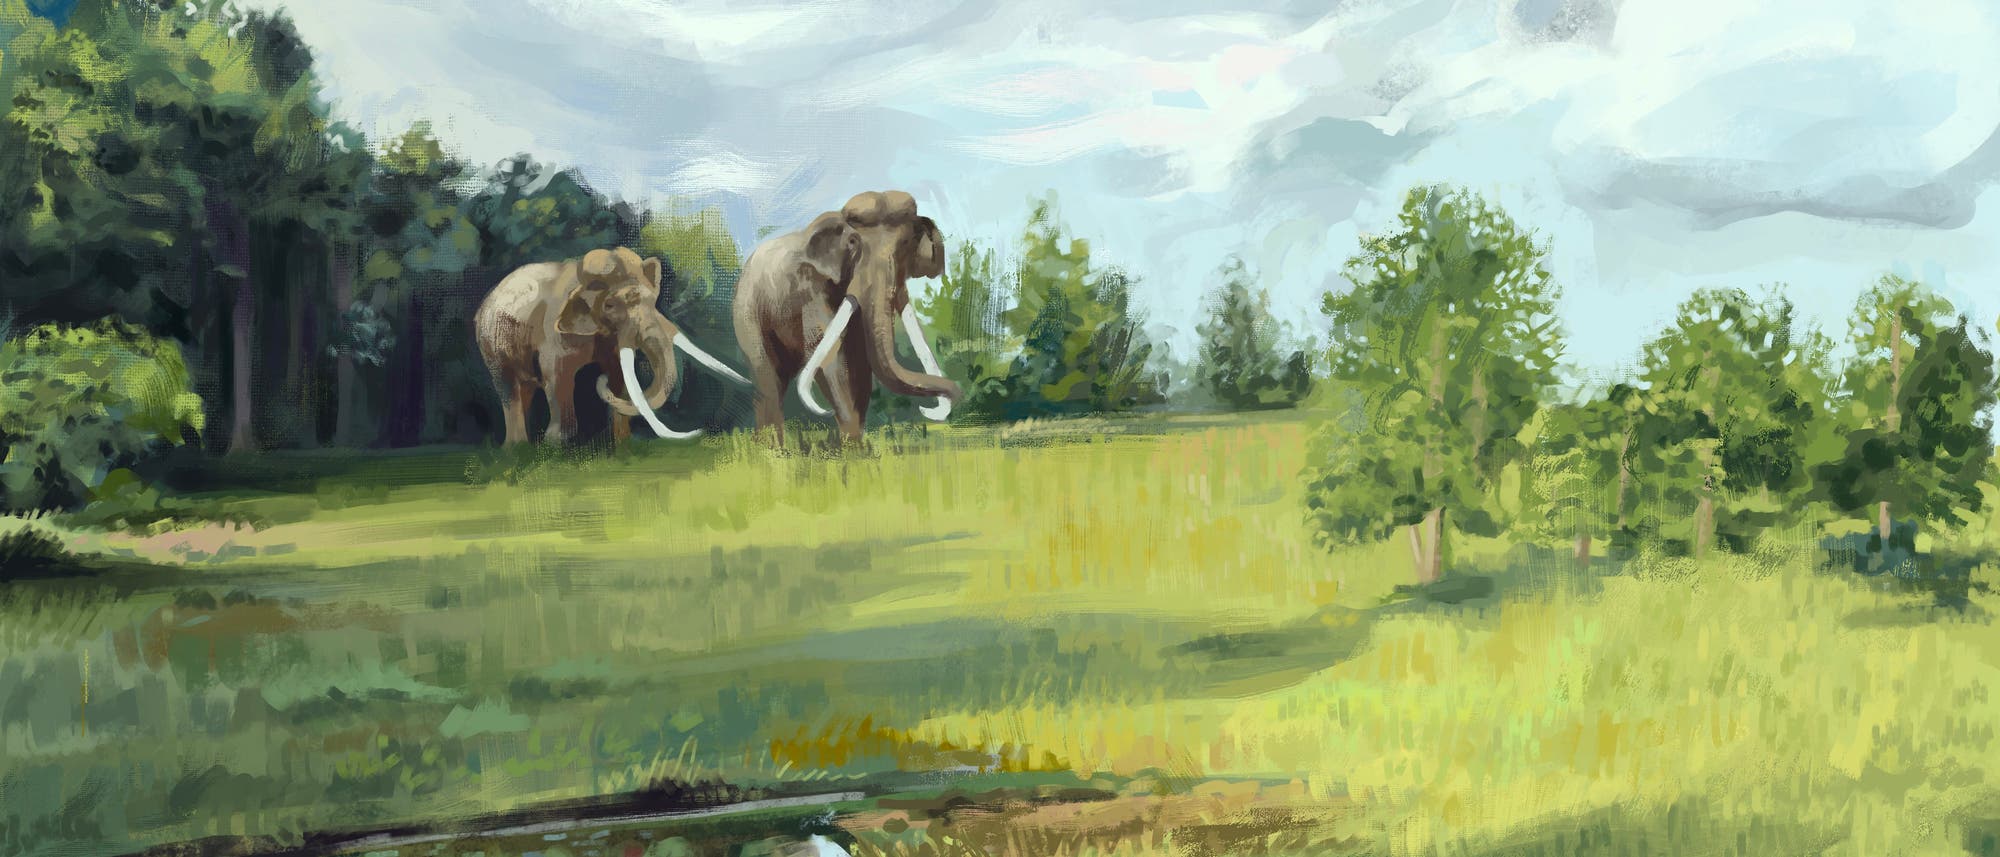 Illustration einer prähistorischen Landschaft in Europa: Elefanten betreten eine Lichtung aus einem Wald heraus. Einzelne kleine Bäume stehen im Offenland